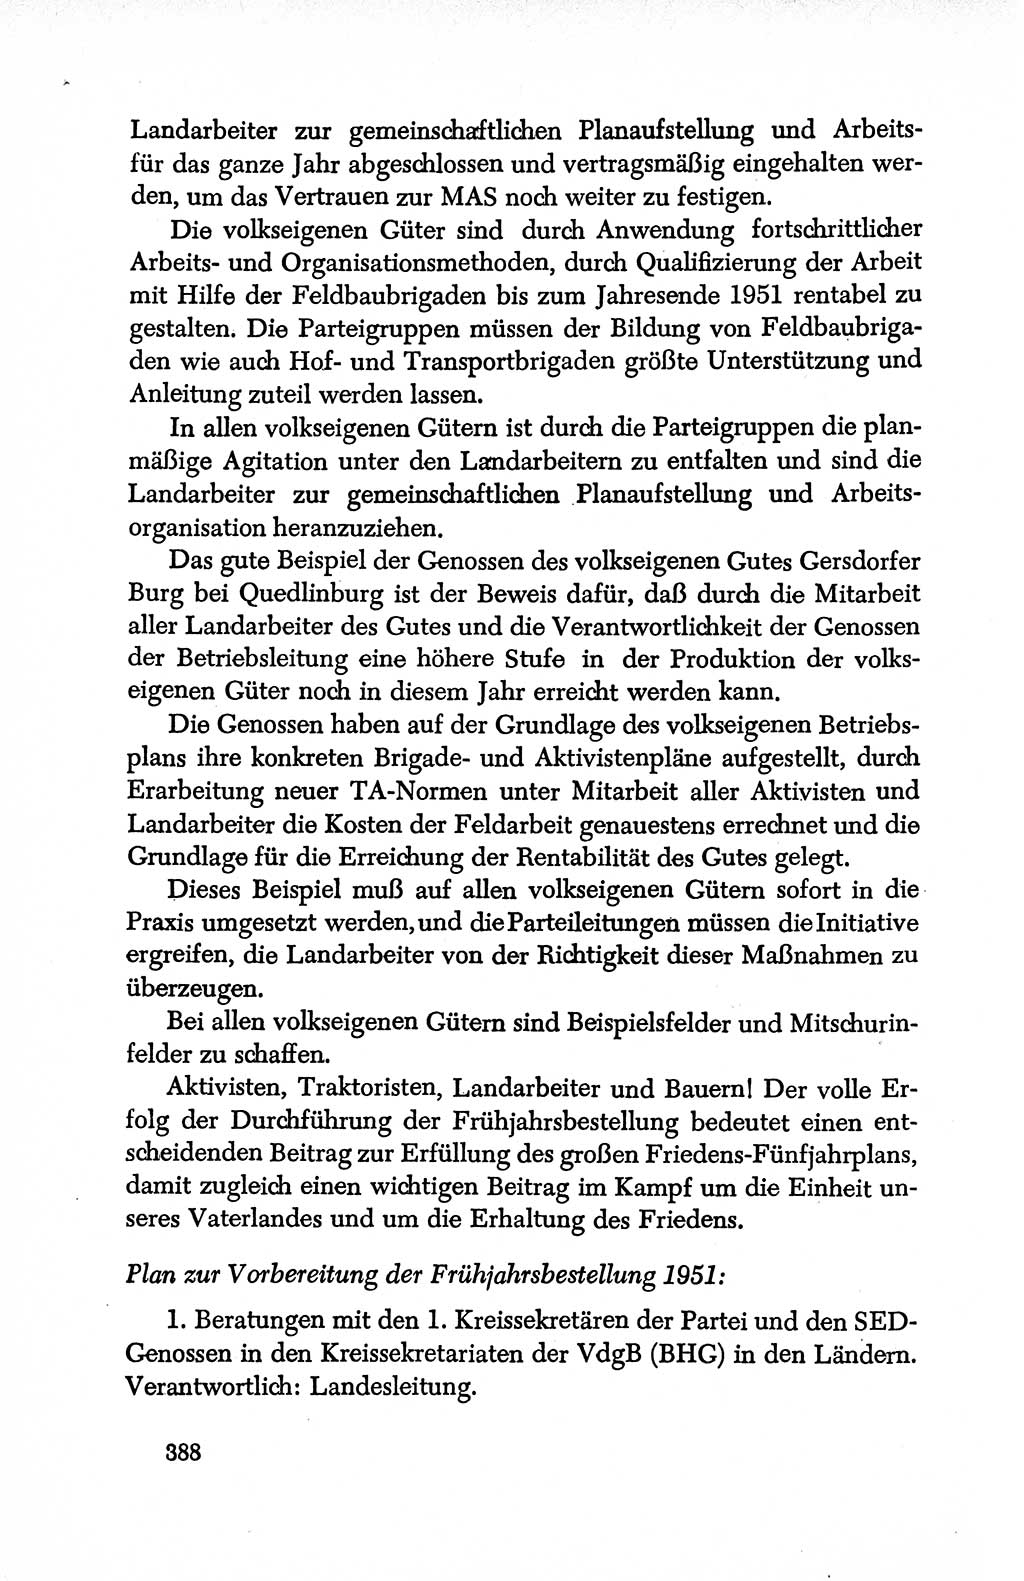 Dokumente der Sozialistischen Einheitspartei Deutschlands (SED) [Deutsche Demokratische Republik (DDR)] 1950-1952, Seite 388 (Dok. SED DDR 1950-1952, S. 388)